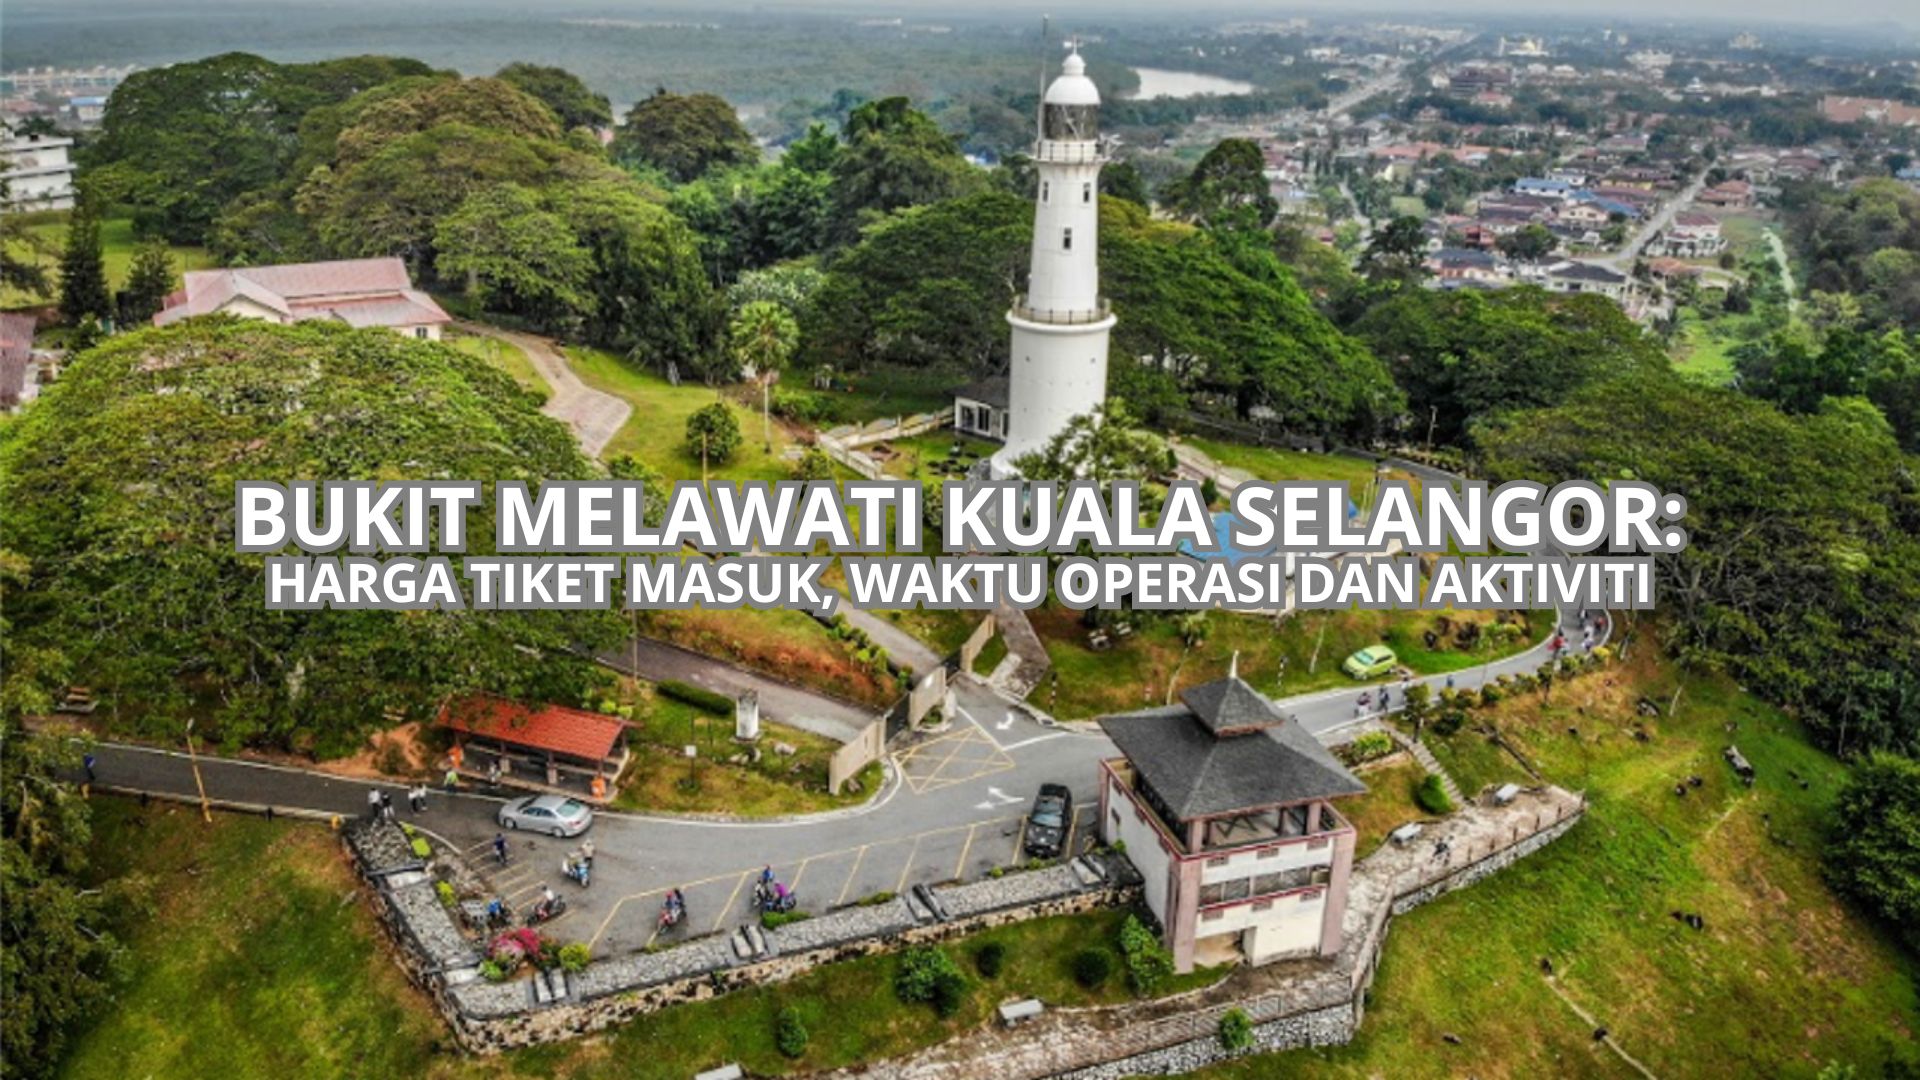 Bukit Melawati Kuala Selangor Cover